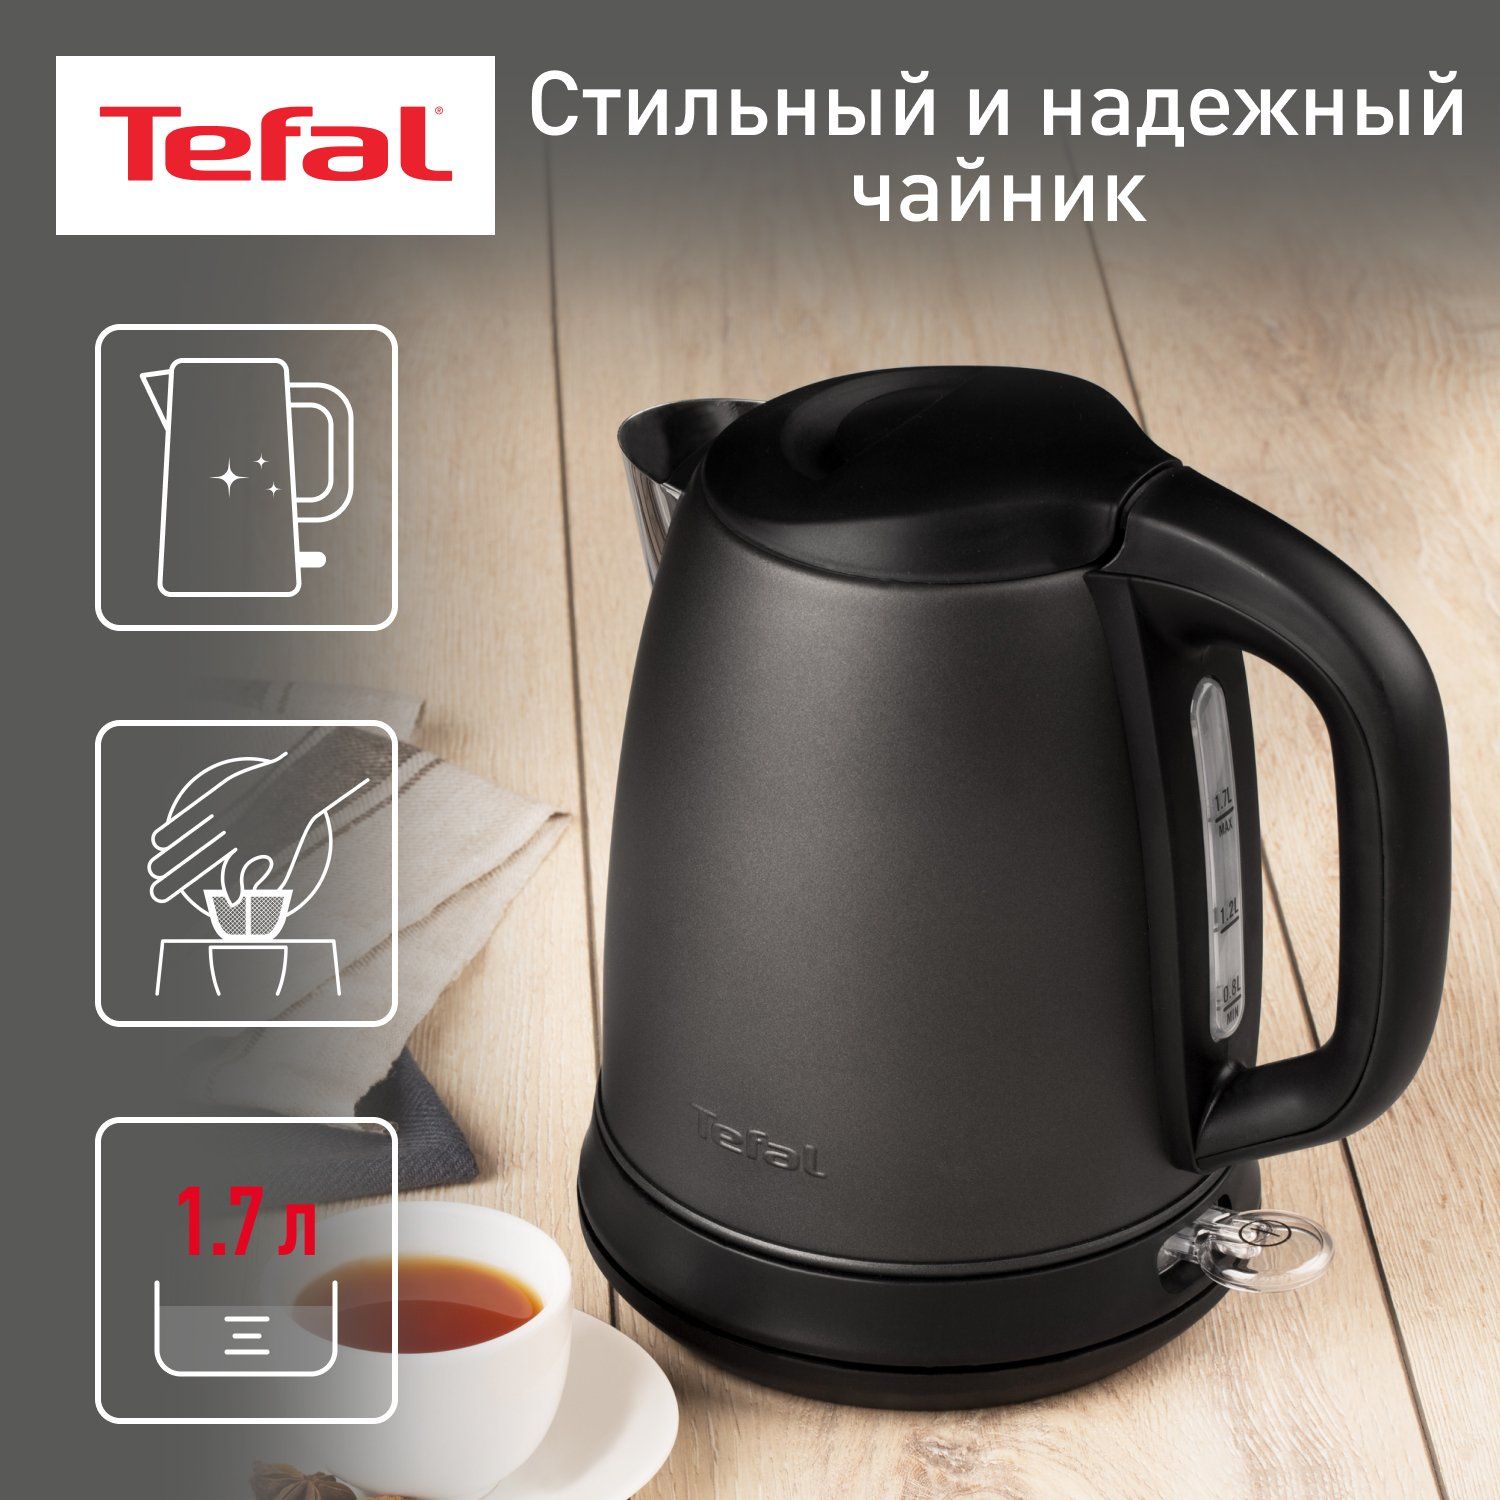 Чайник электрический Tefal Confidence KI270930, 1.7 л, графит/черный